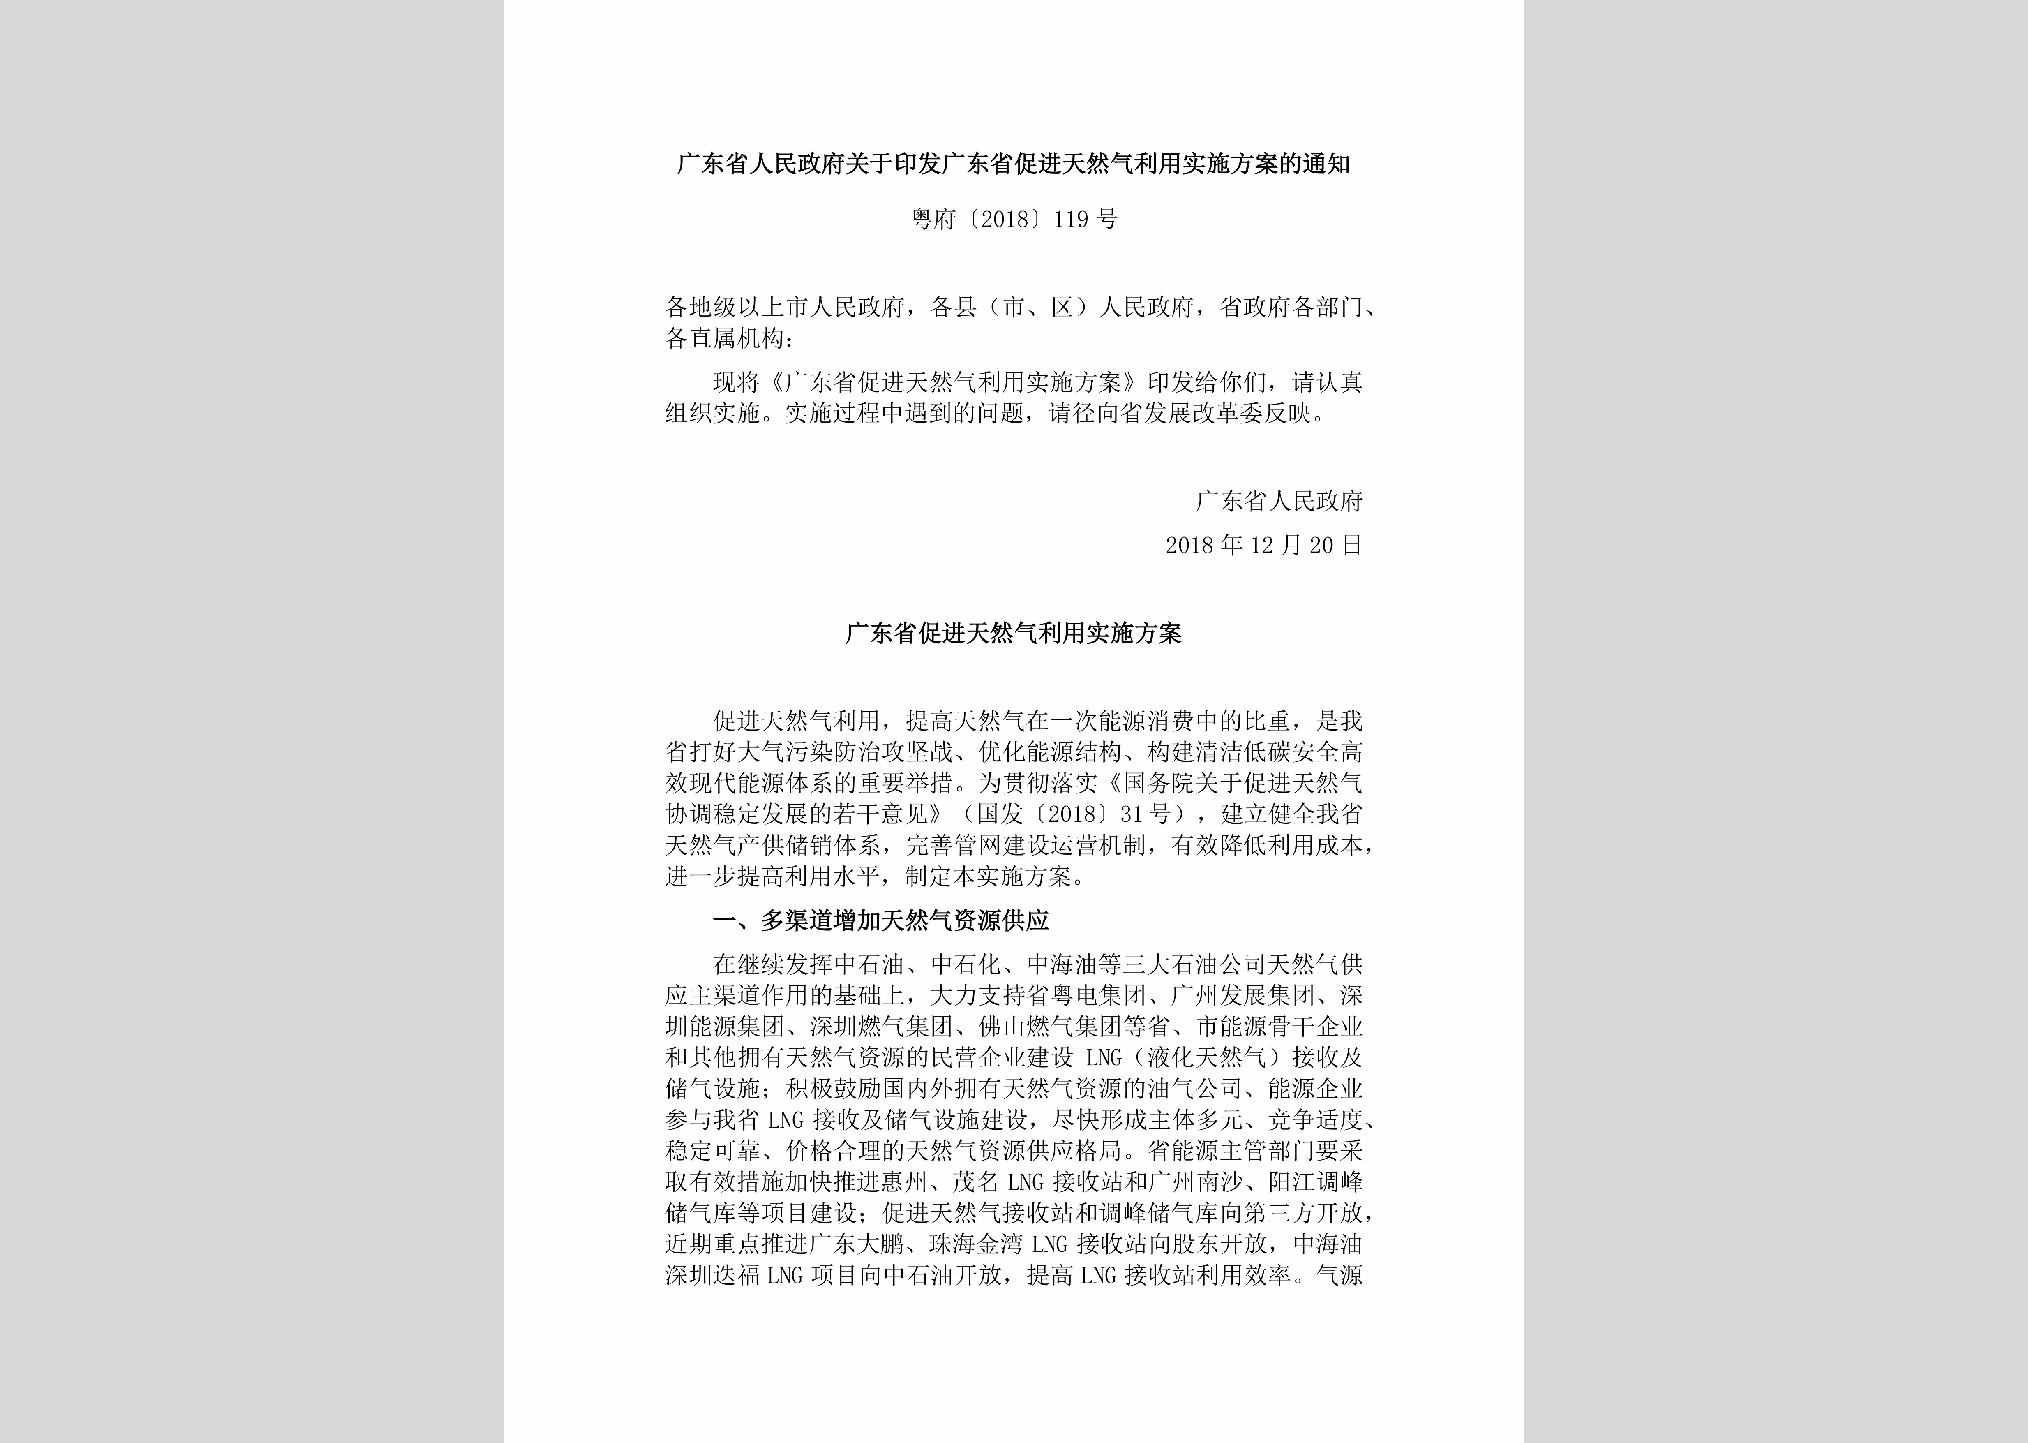 粤府[2018]119号：广东省人民政府关于印发广东省促进天然气利用实施方案的通知